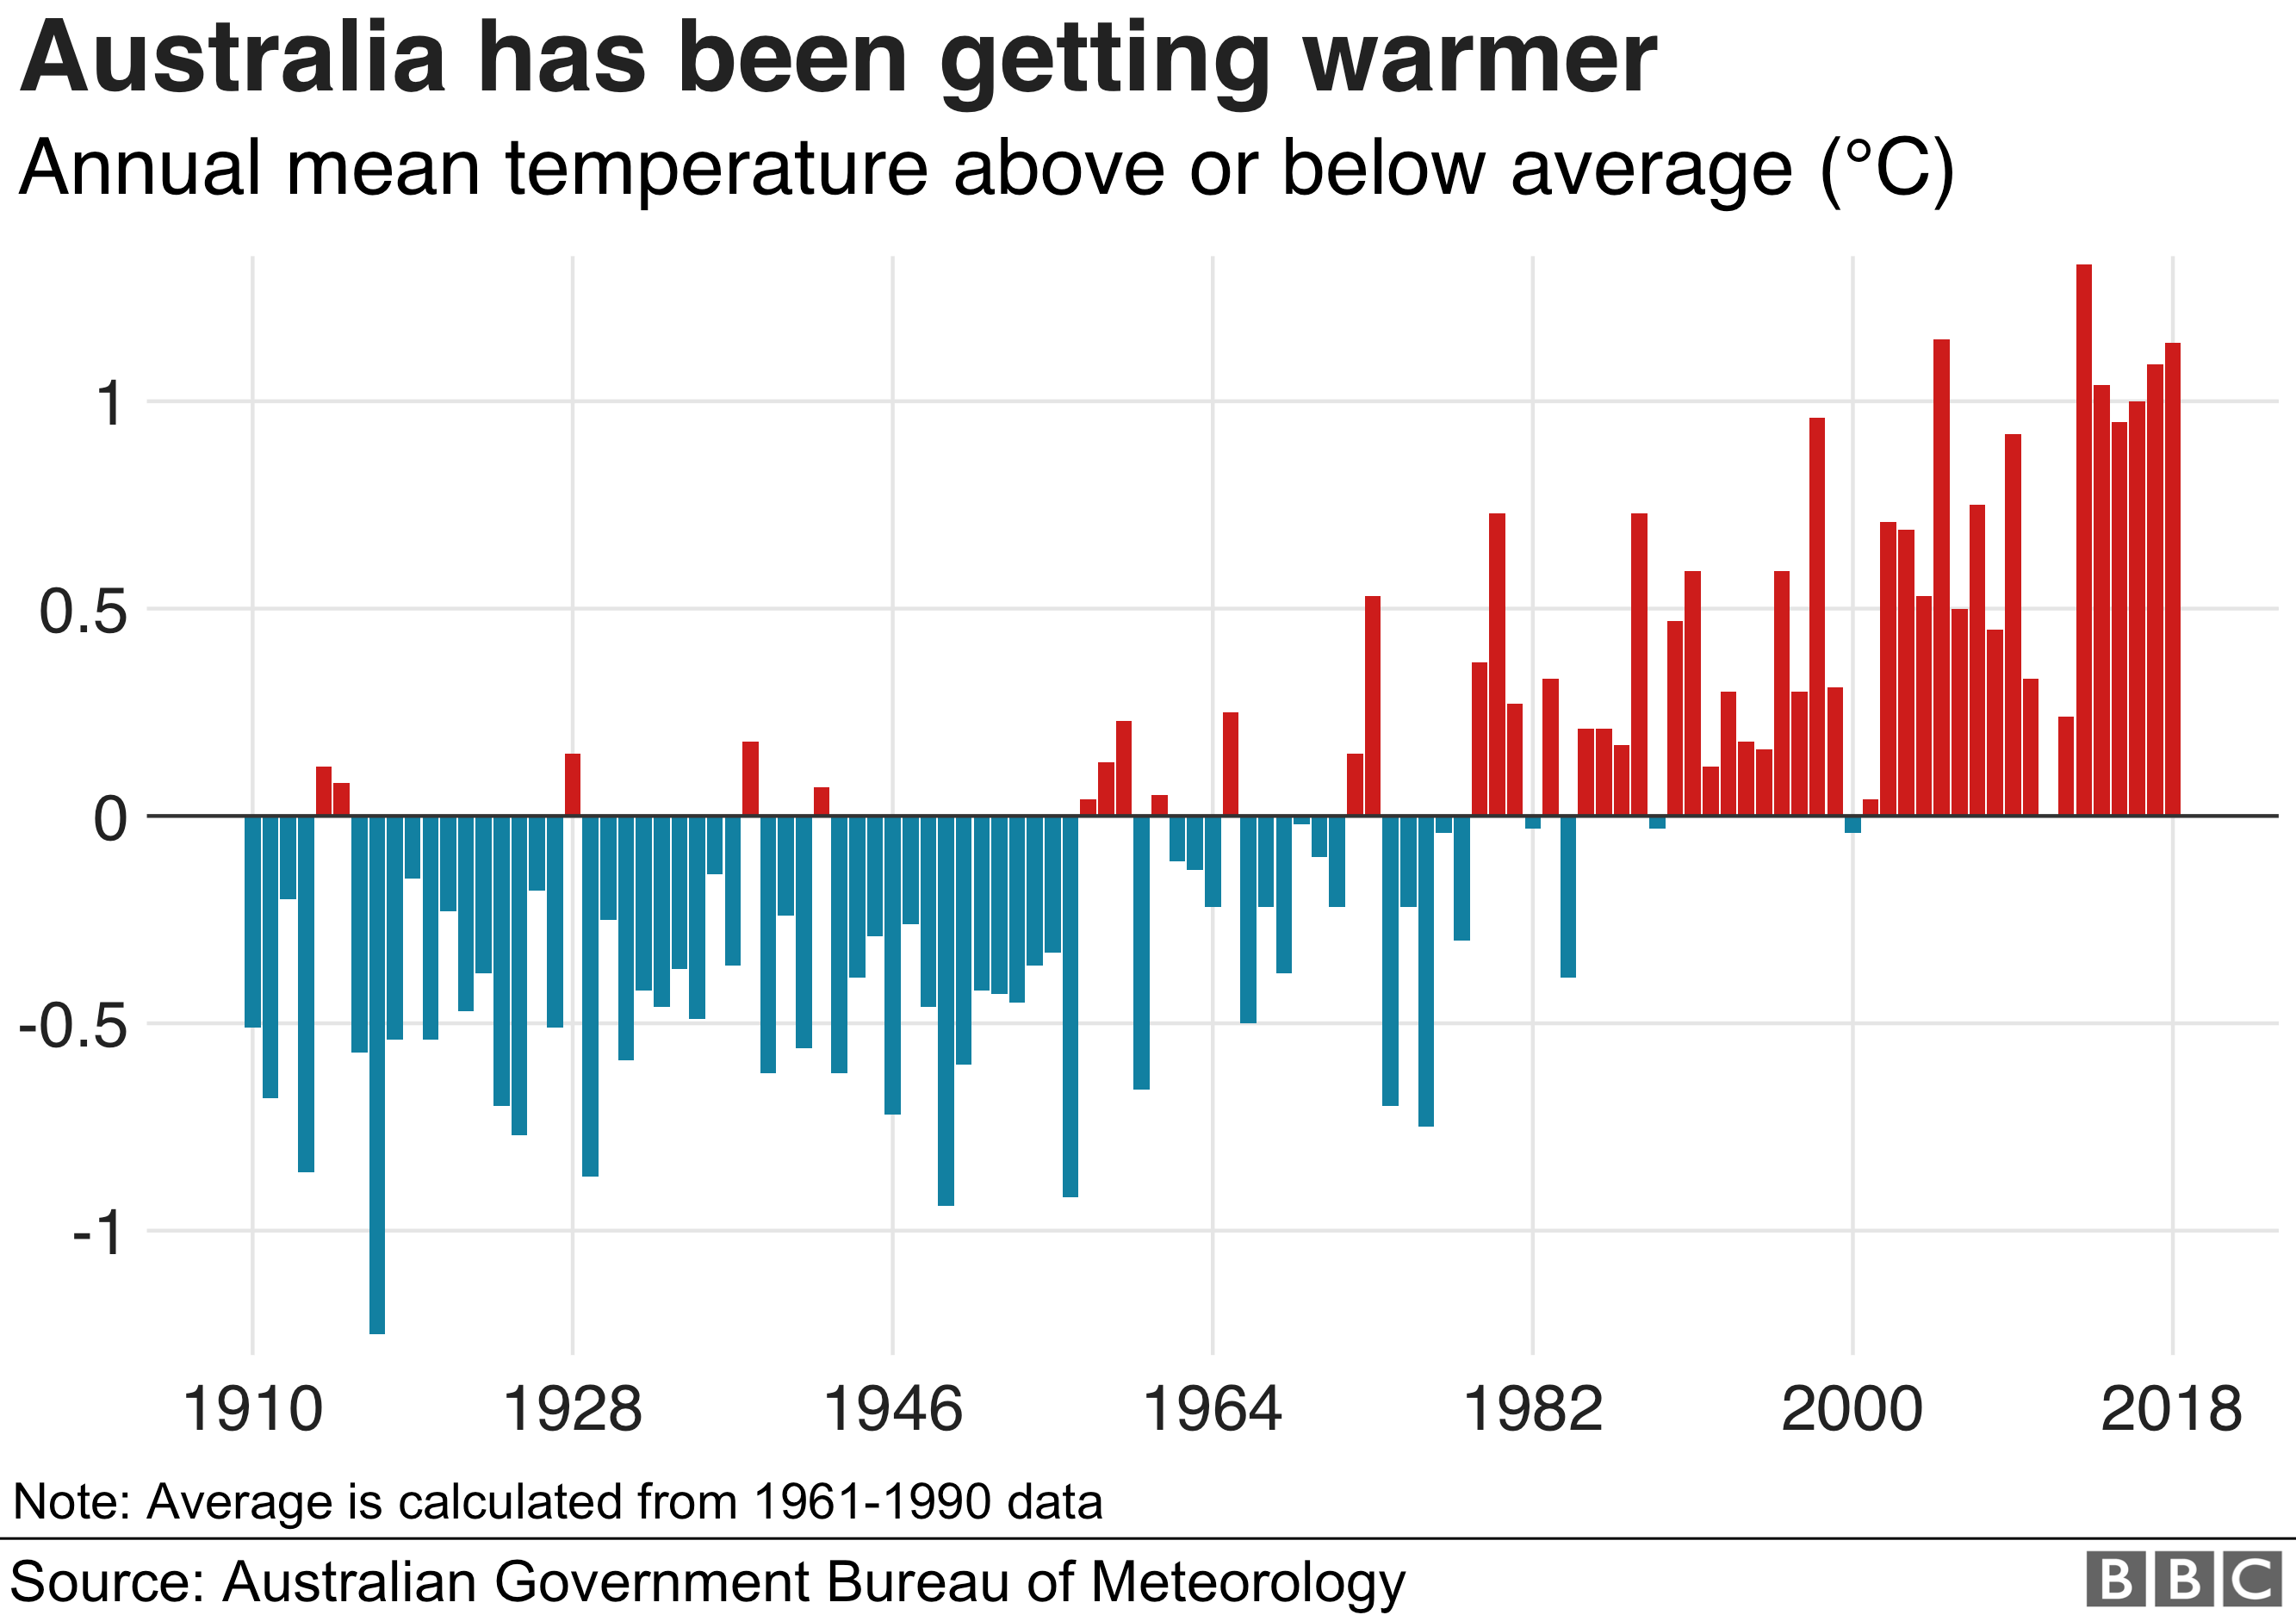 Gráfico que muestra cómo Australia se ha vuelto más cálida en las últimas décadas